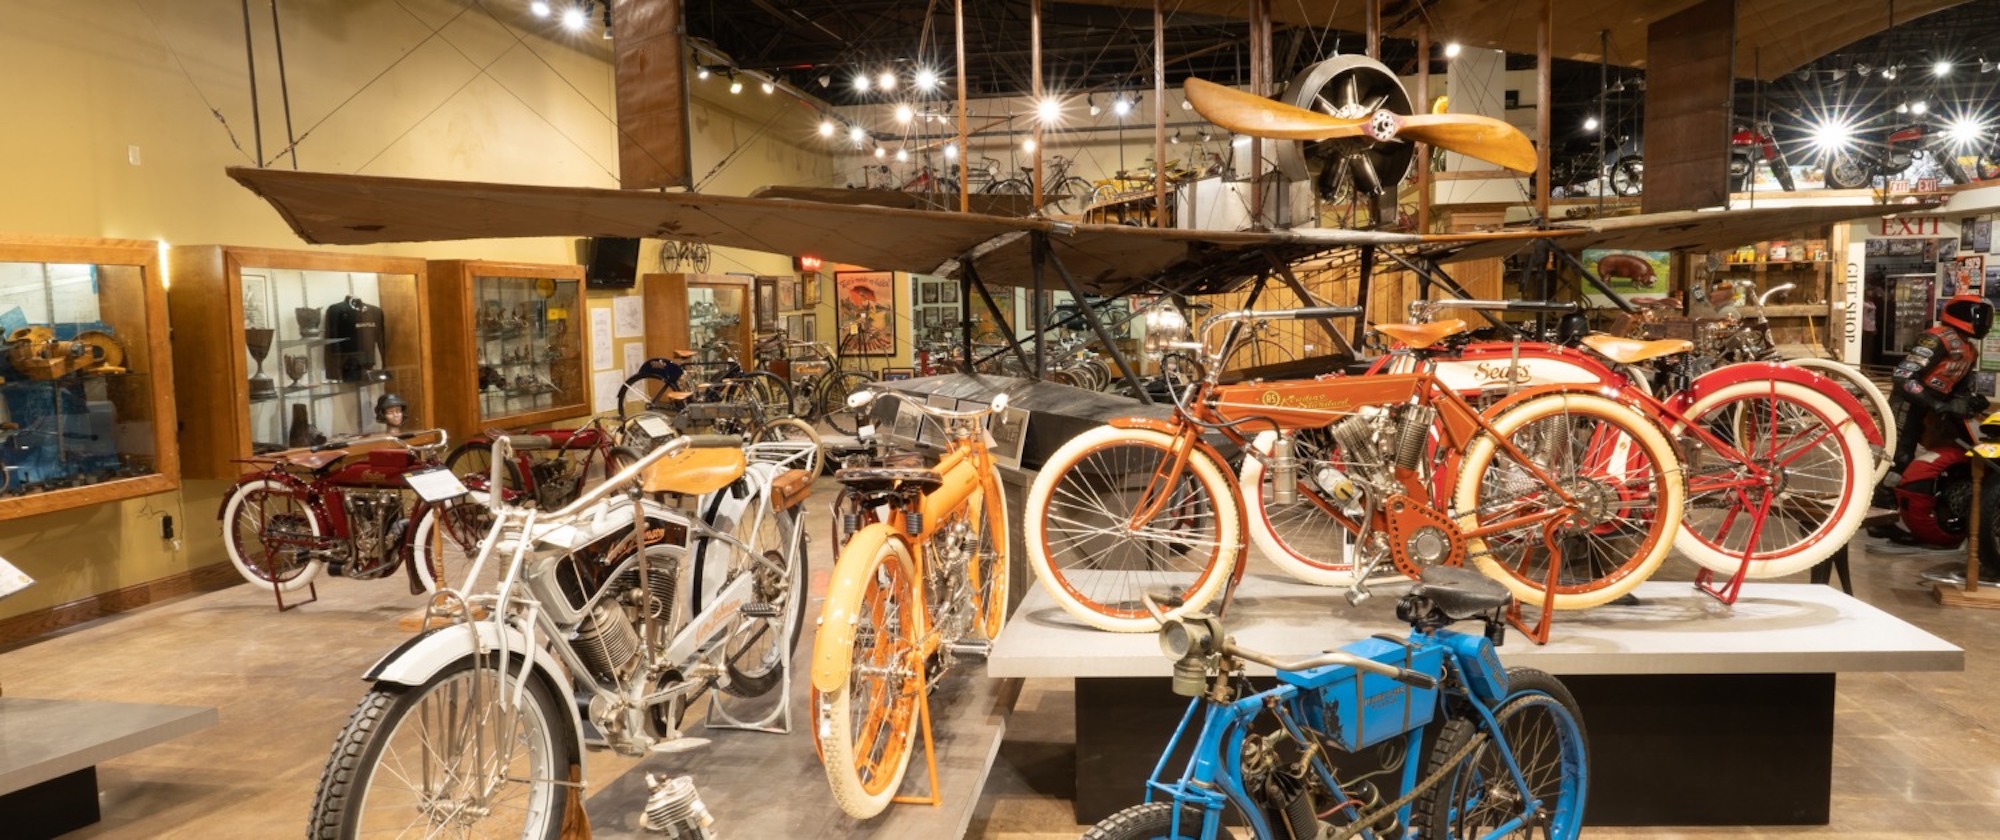 一个视图的集合提供了在爱荷华州的国家摩托车博物馆,这是提供“超过300 collector-grade摩托车和超过1000很多路艺术”指南的砧板。媒体来自NMM。